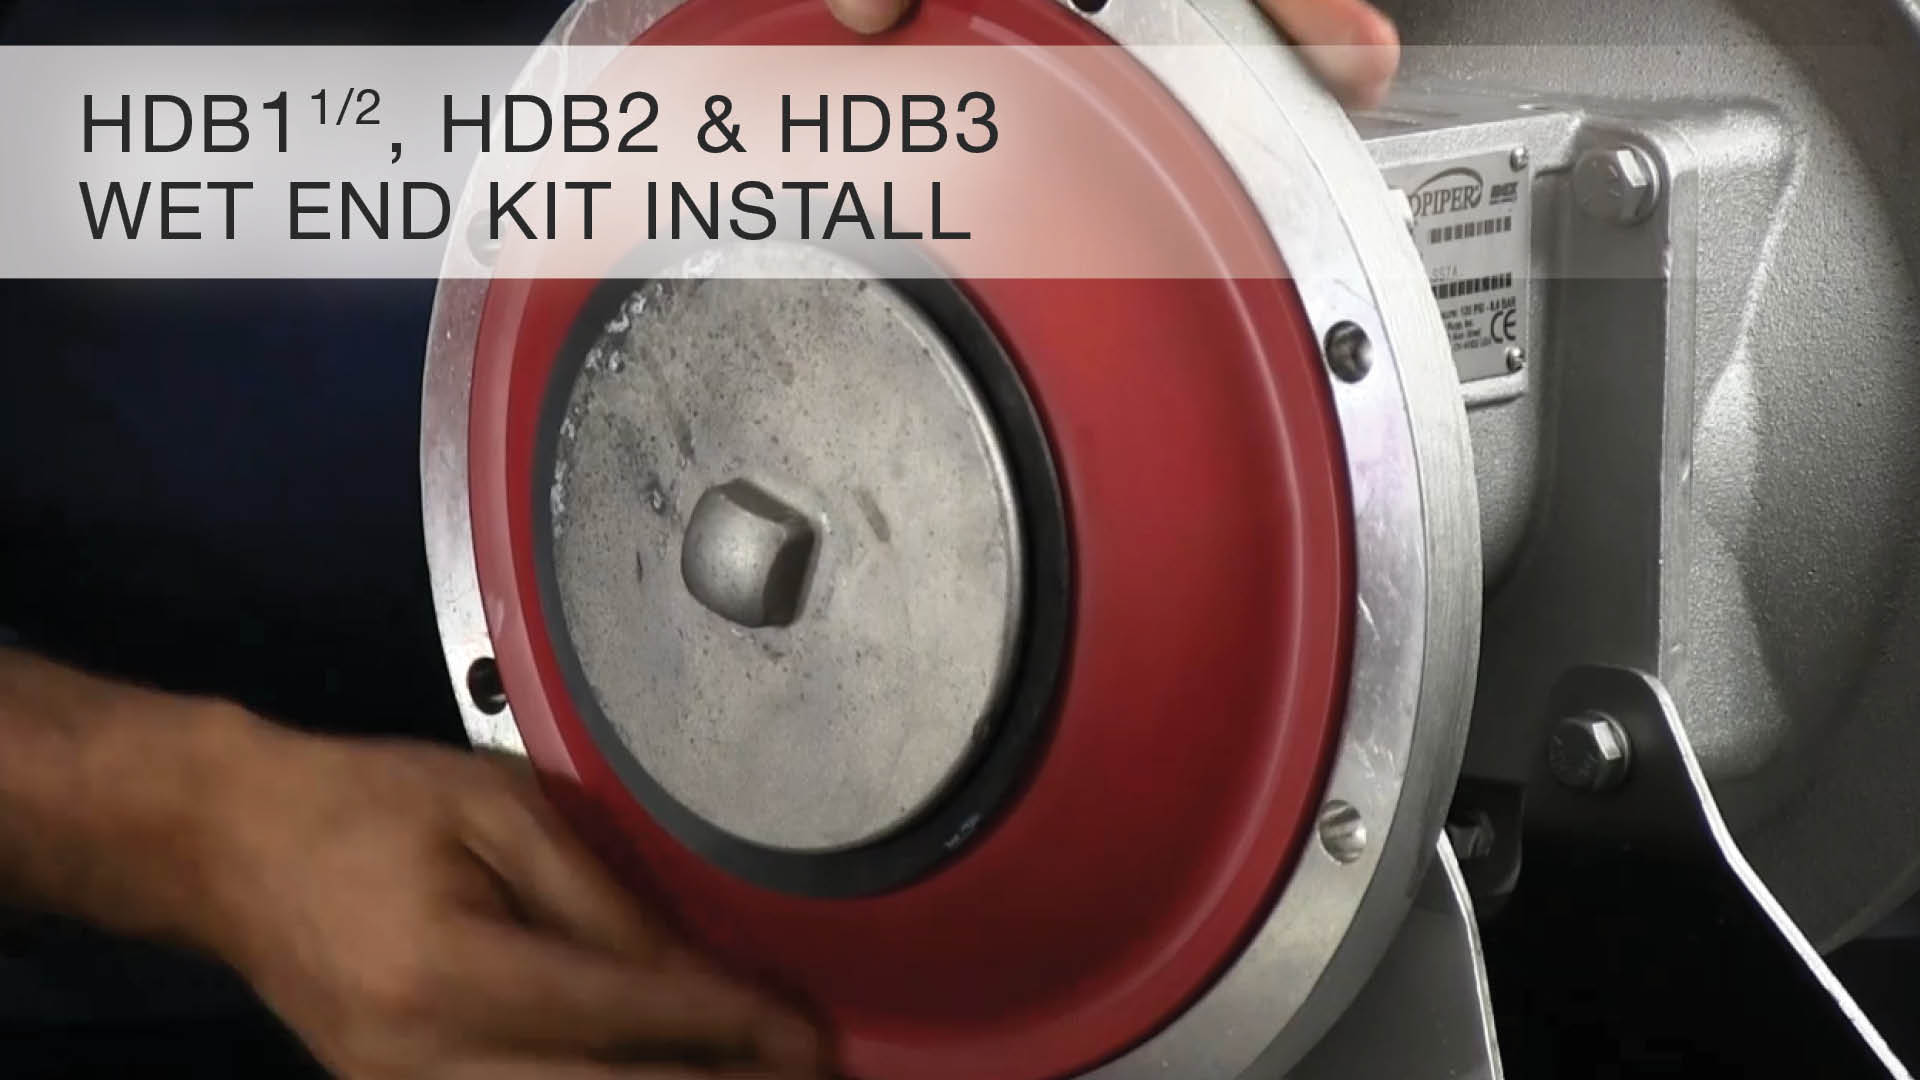 HDB1 1/2, HDB2, HDB3, Wet End Kit Install